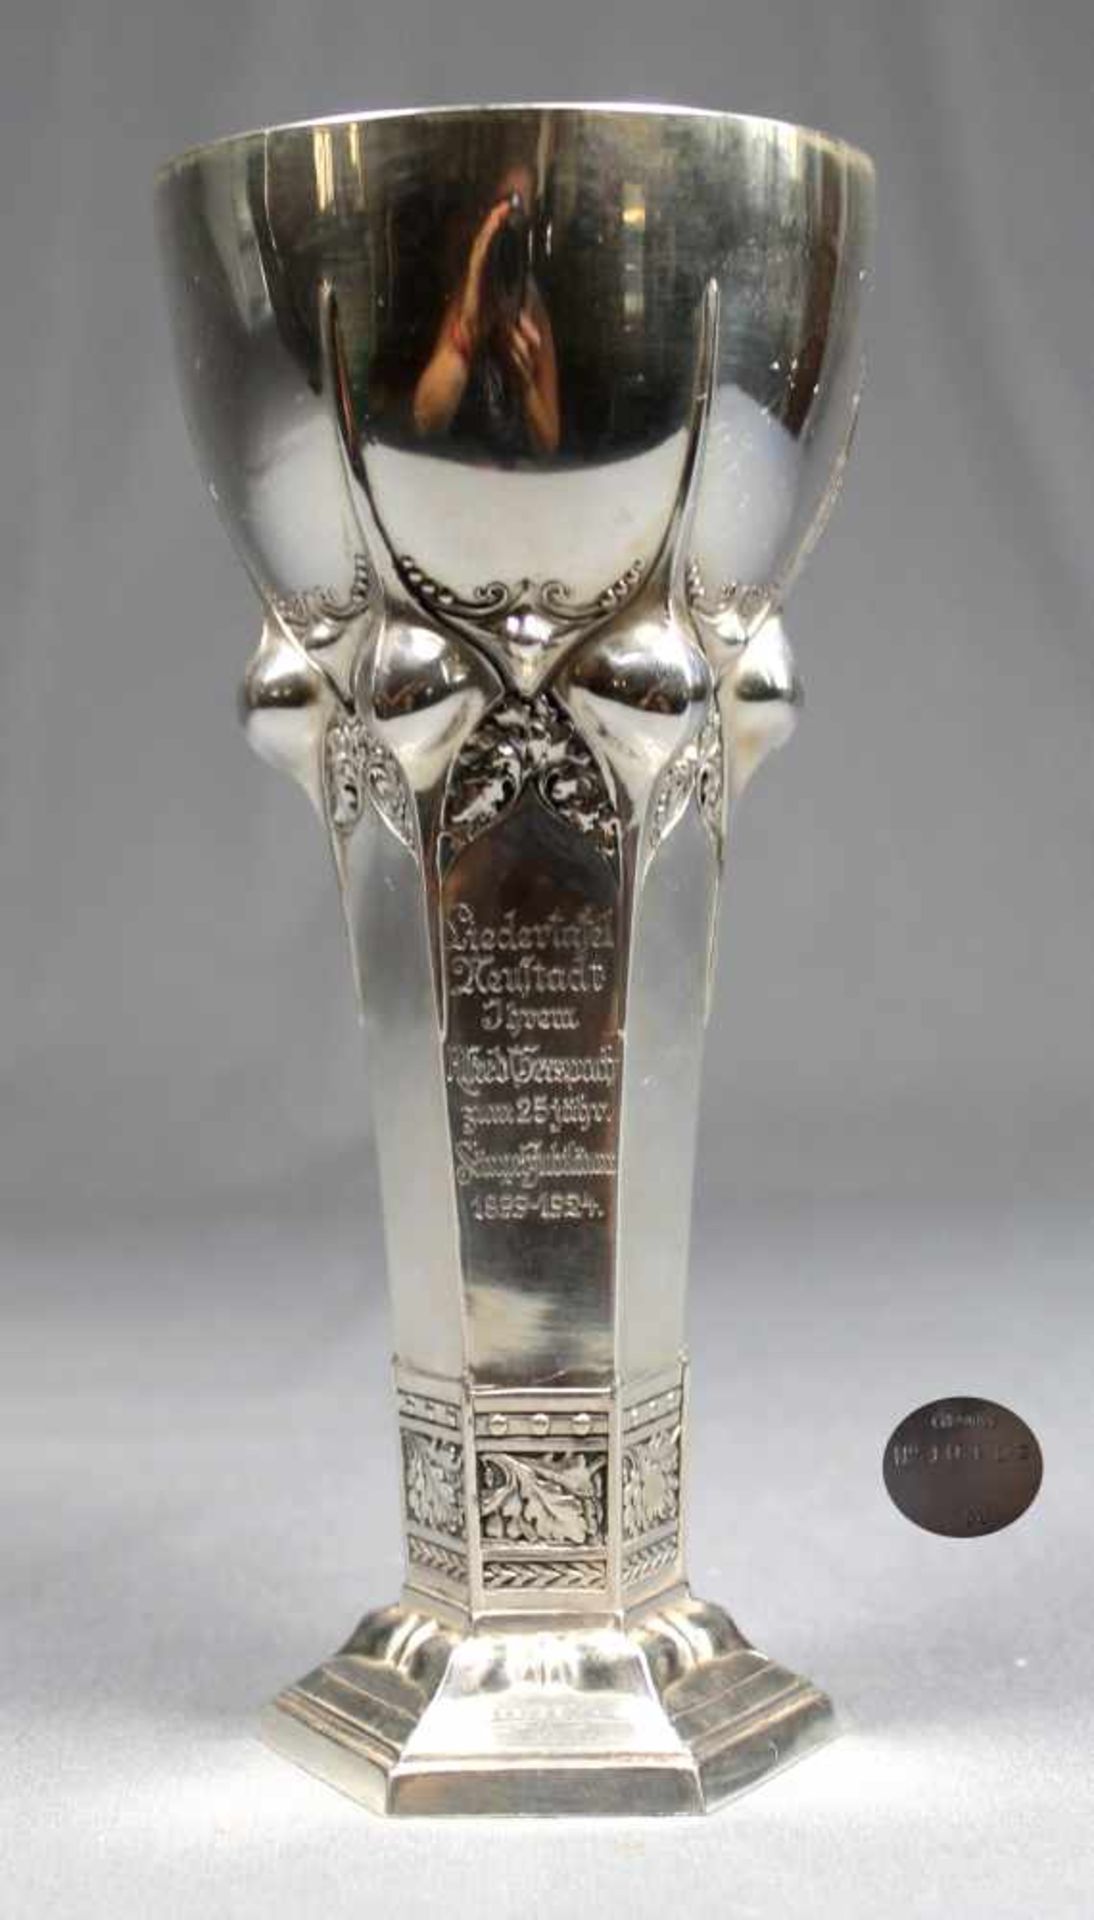 1 Pokal Silber (800/000), Punzen u.a. Halbmond und Krone, No. 10409, mit reich getriebenem Dekor und